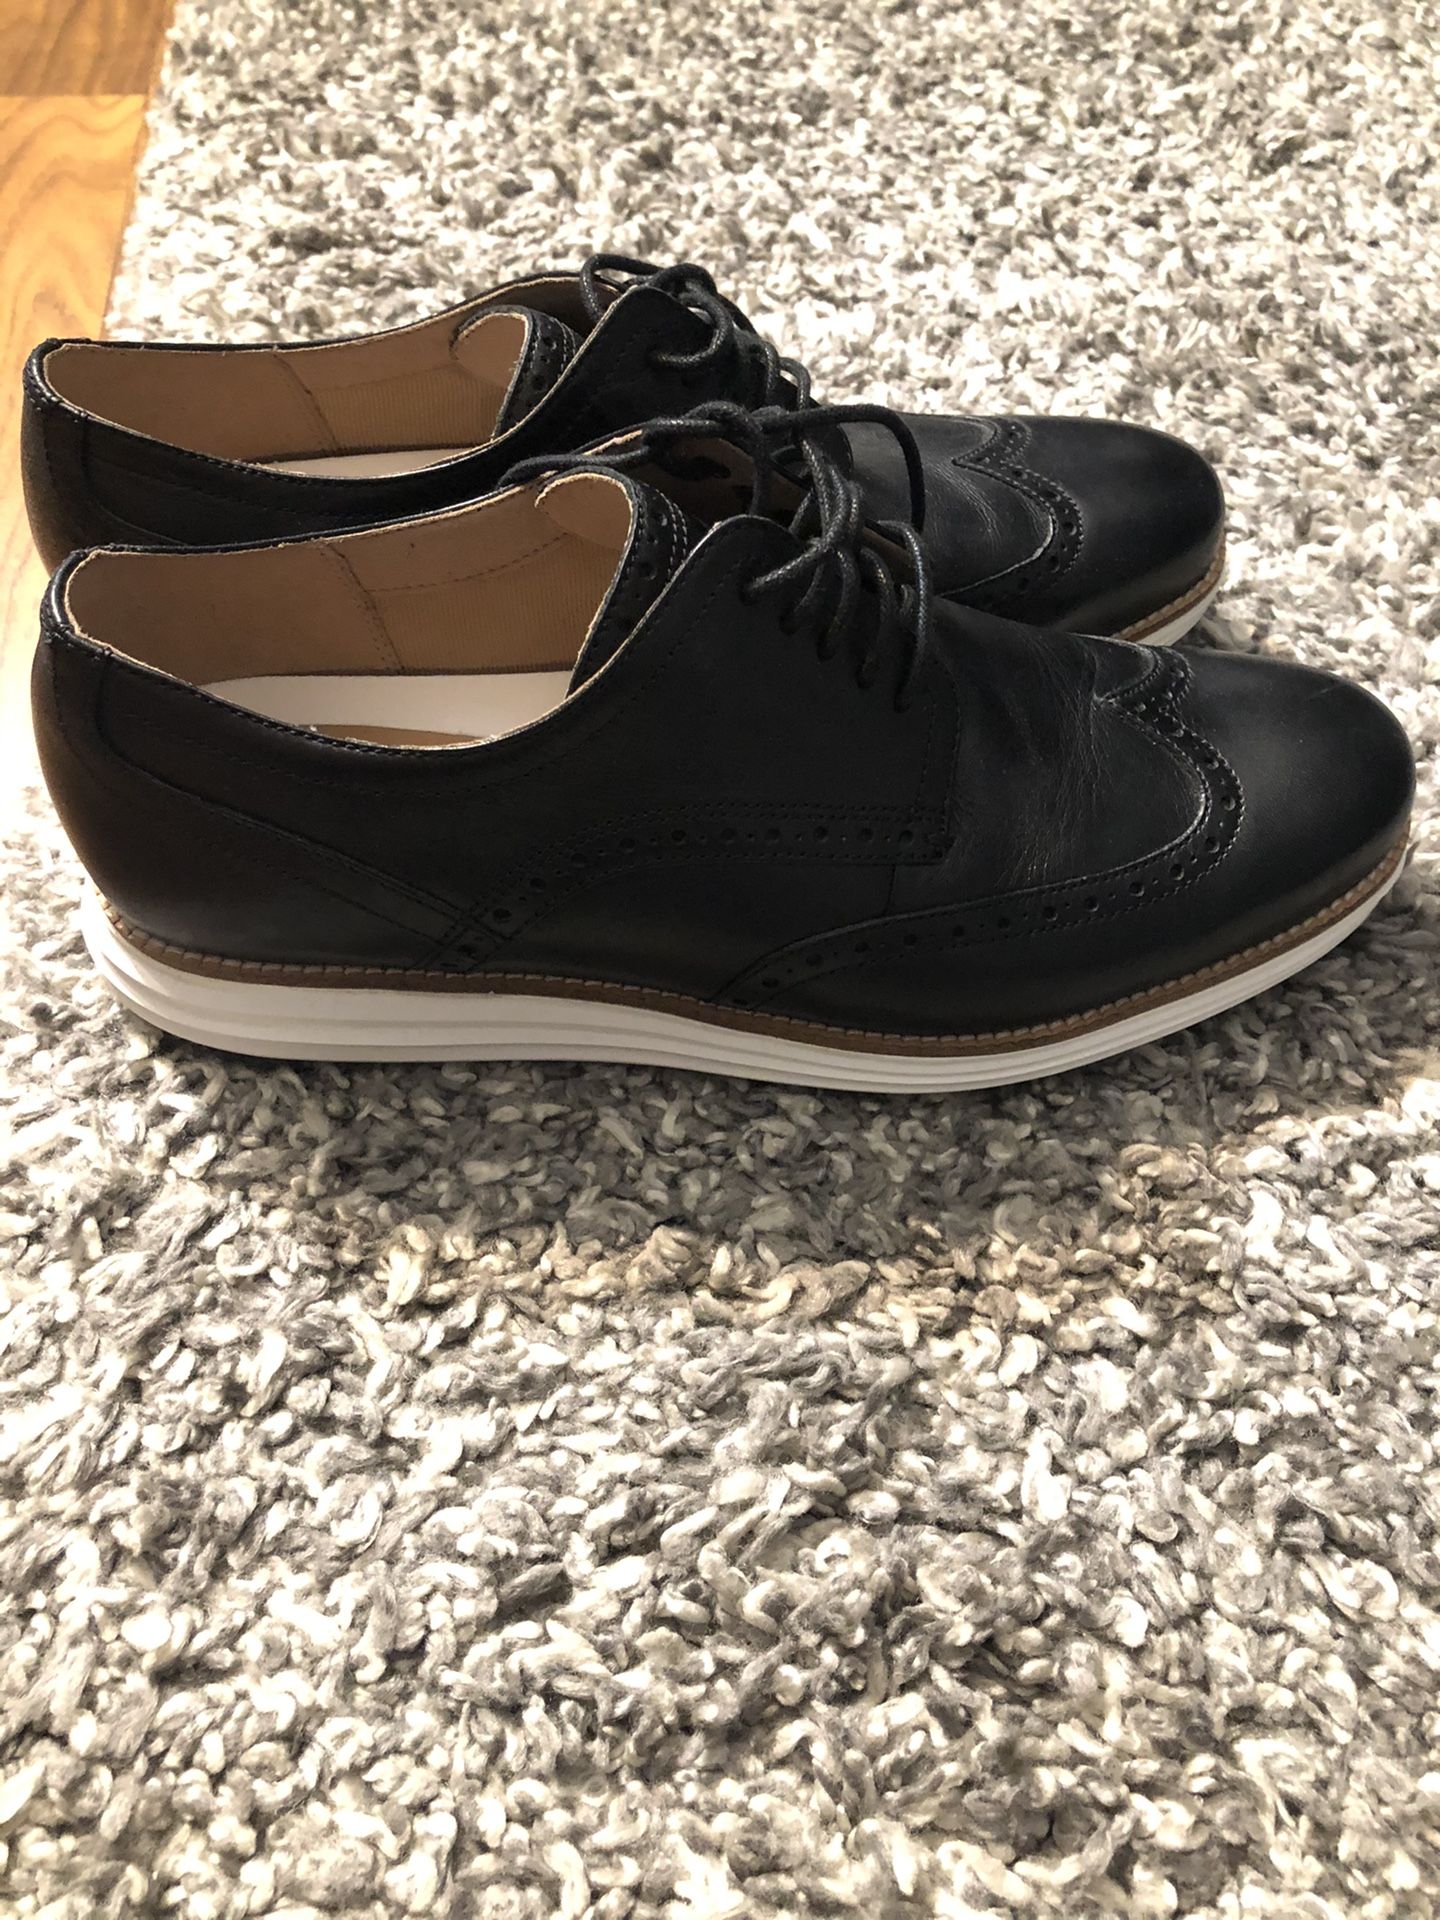 NEW Men's Cole Haan Zero Grand Dress Shoes Black Size 10.5